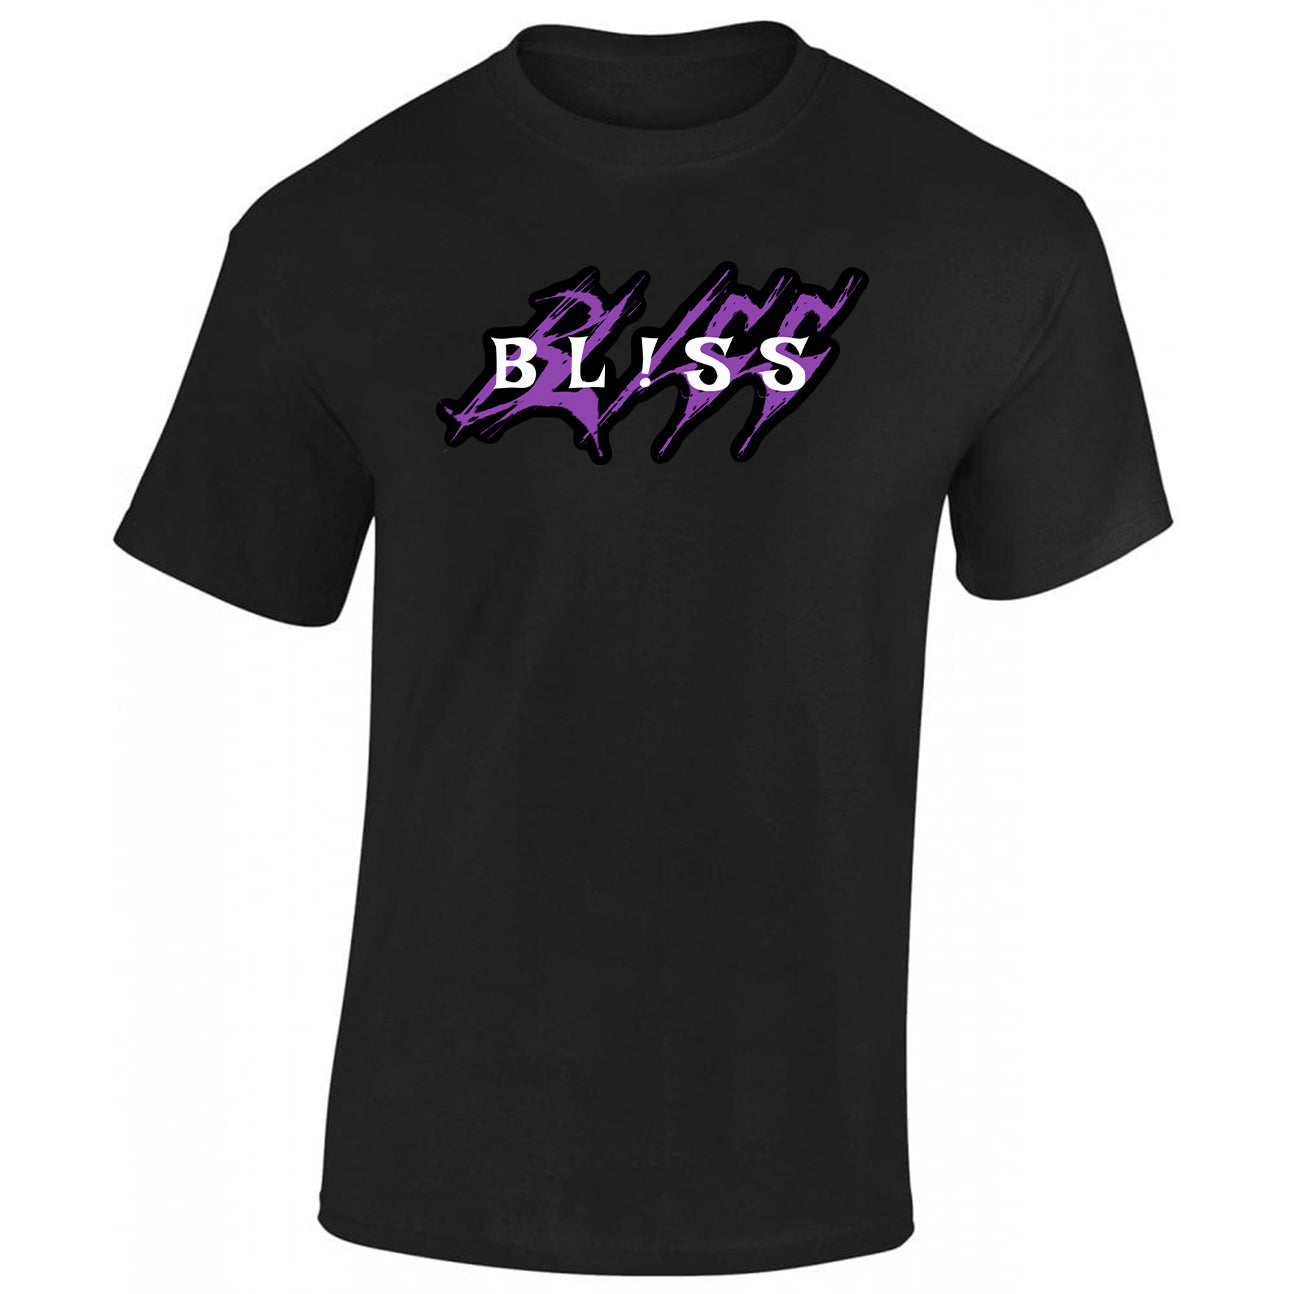 BL!SS T-Shirt